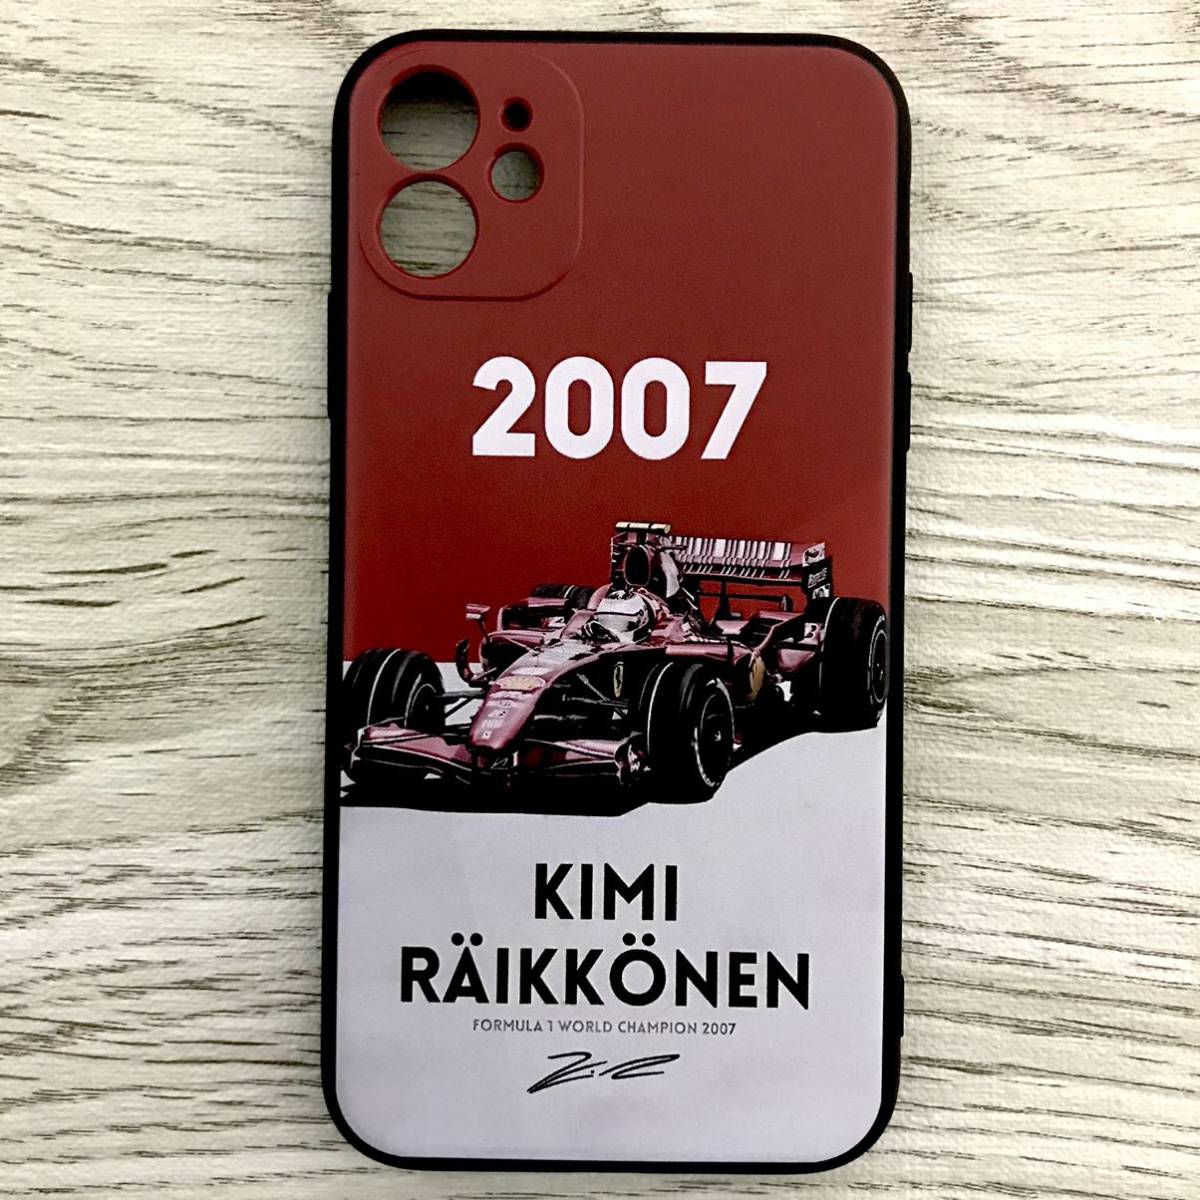  Kimi *lai коннектор n2007 world Champion iPhone 11 кейс F1 Ferrari Ferrari смартфон 